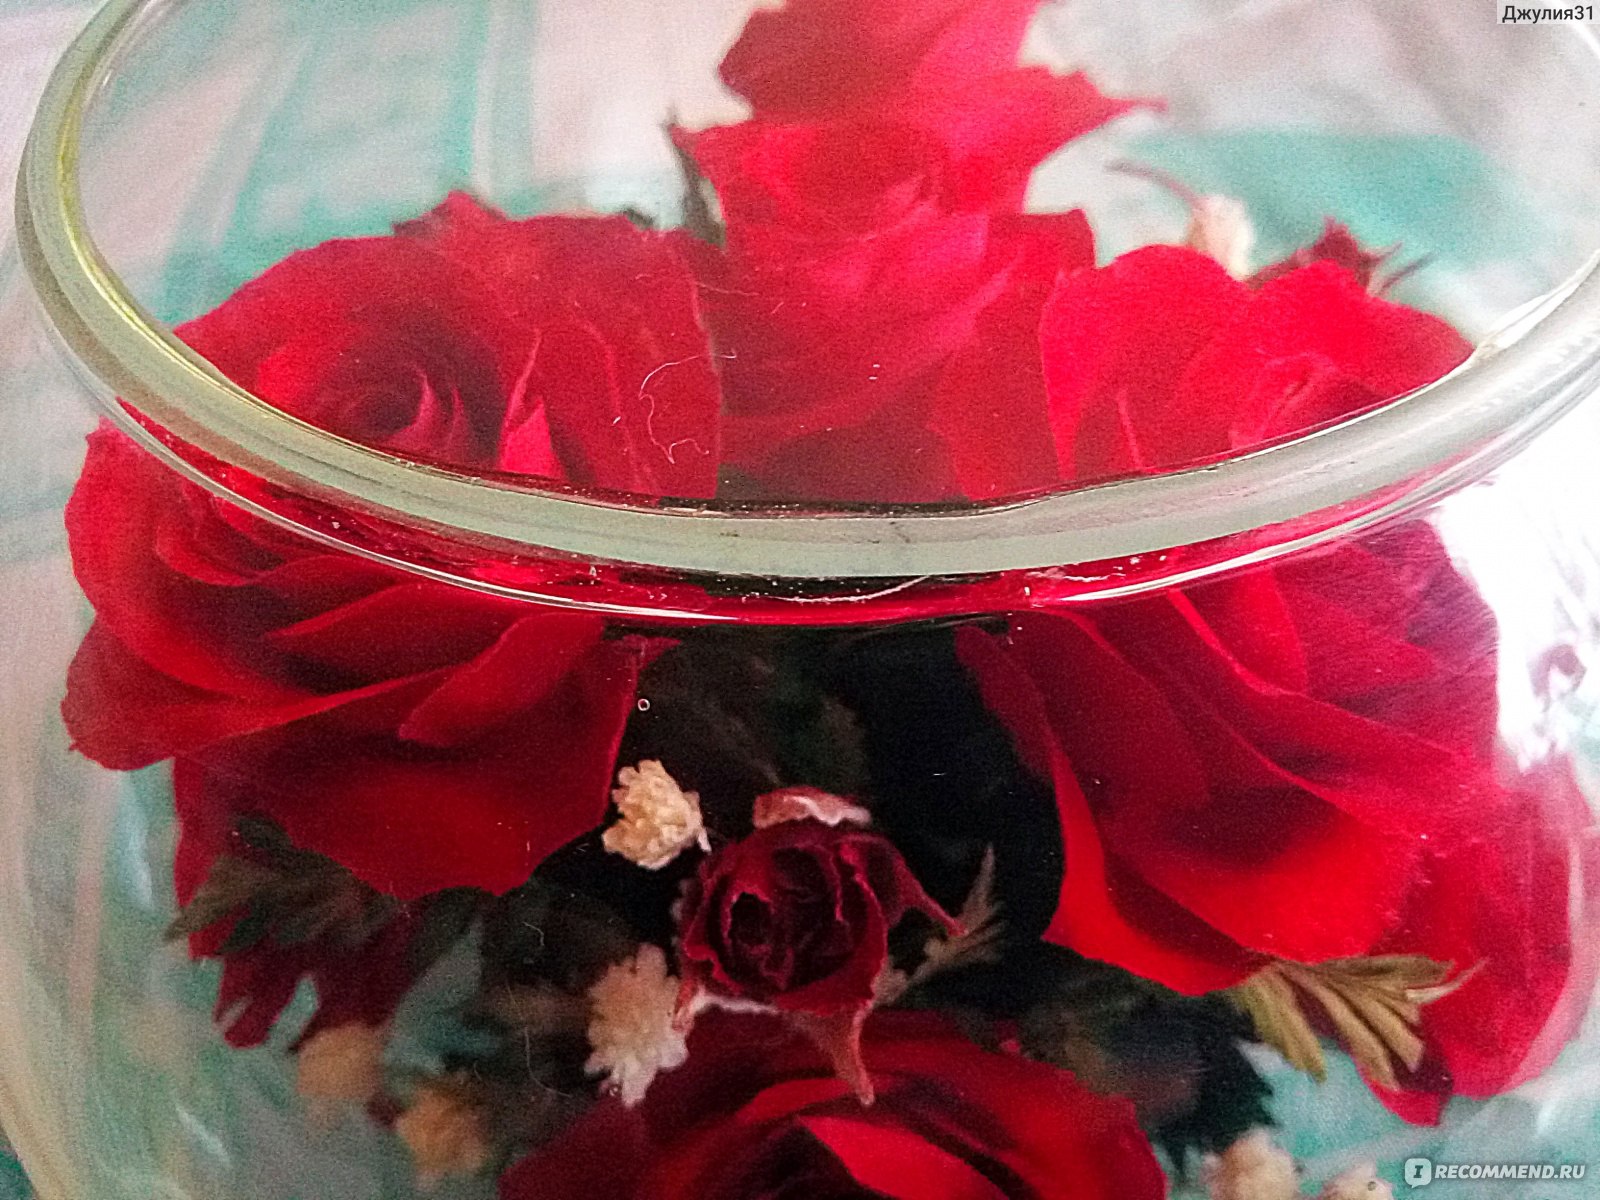 Живые цветы в вакууме Natural Flower Products (NFP) Композиция розы в стекле(артикул BMR13) - «Сомнительная красота! Про живые цветы в вакууме и\